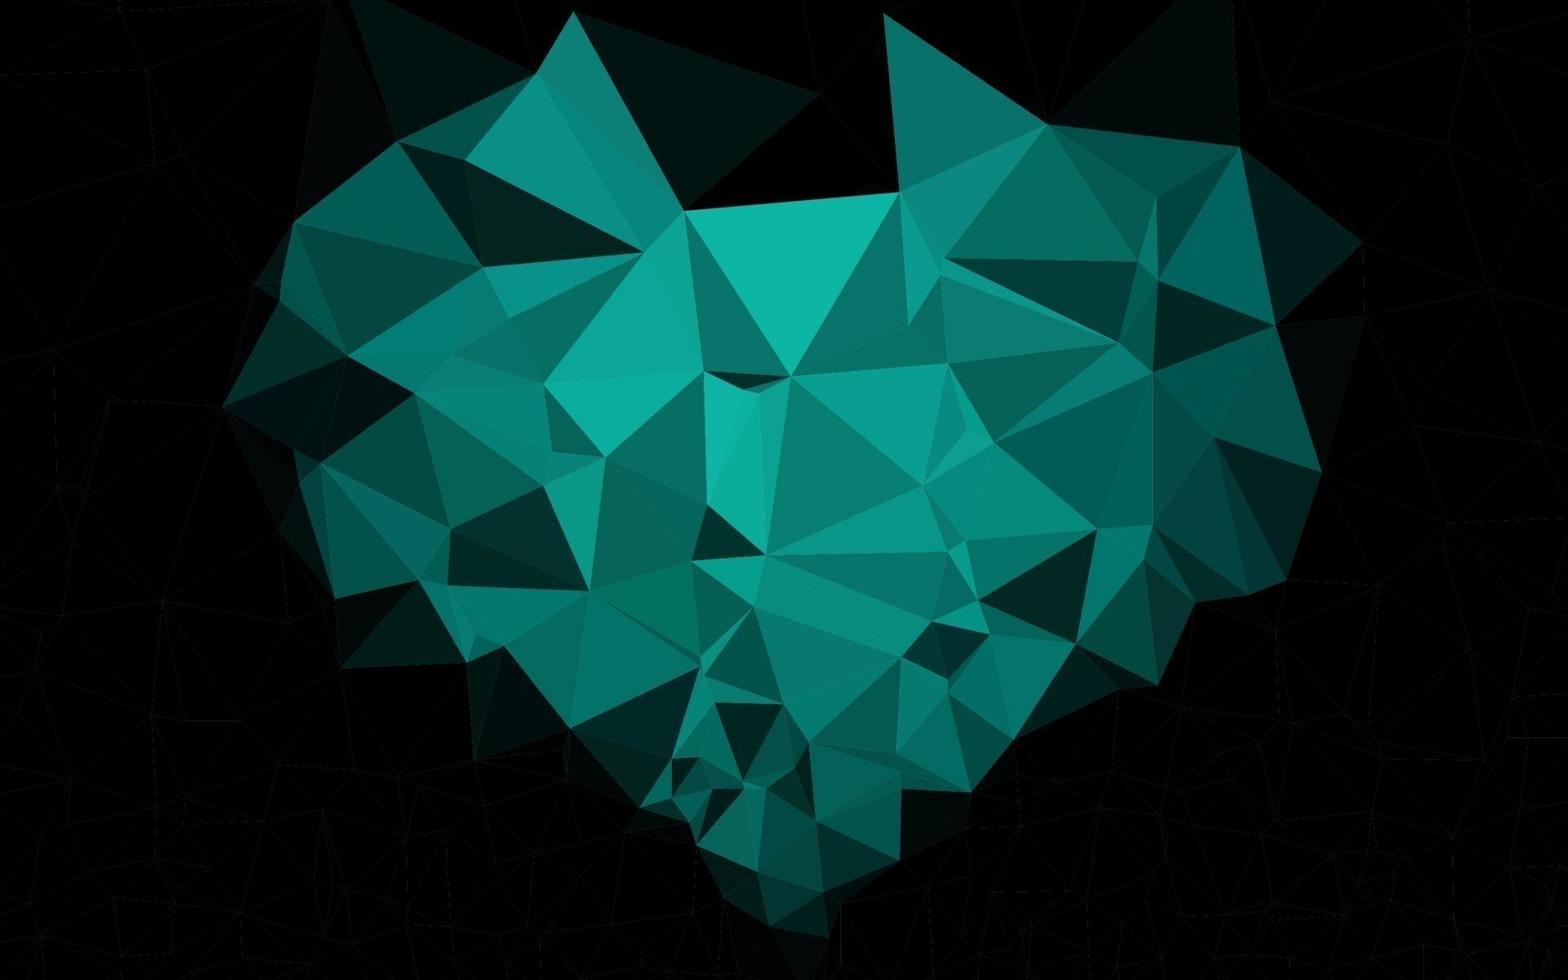 motif triangulaire brillant de vecteur vert foncé.